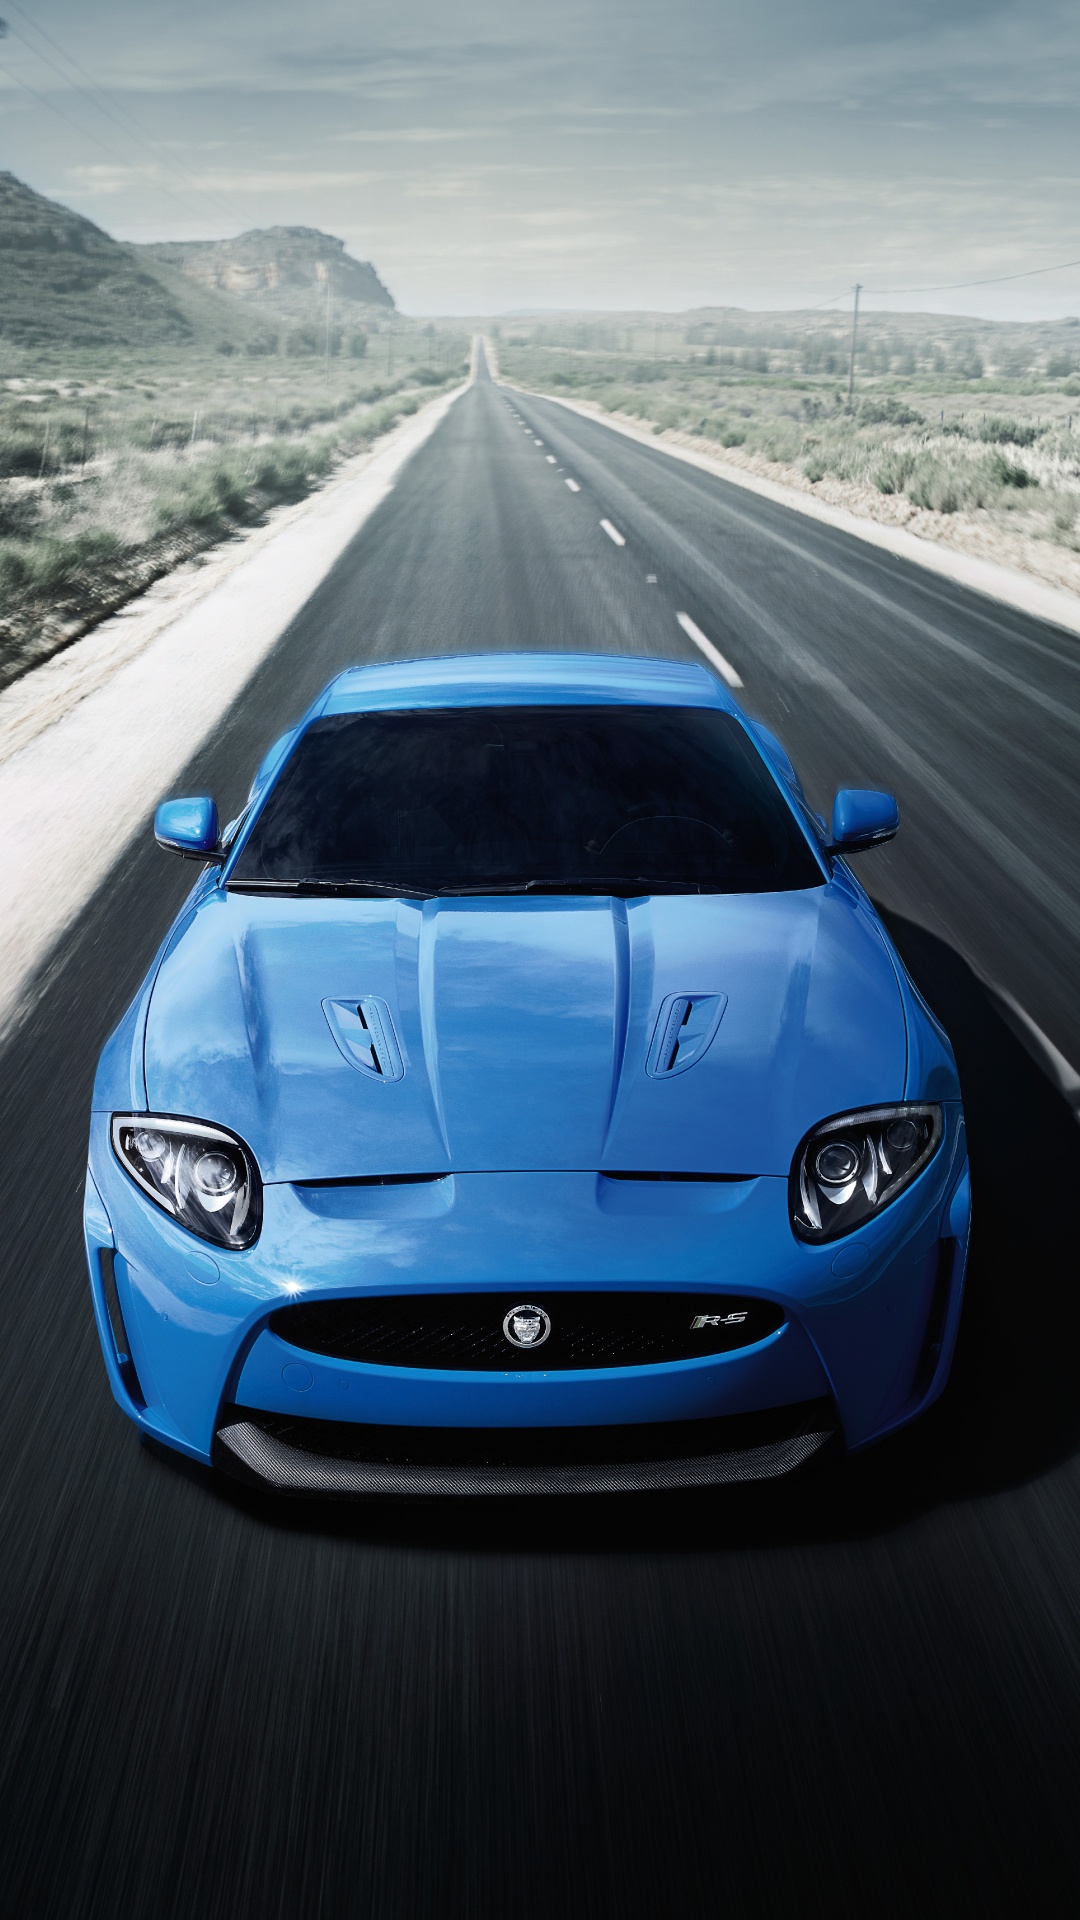 BMW m 3 Azul en la Carretera Durante el Día. Wallpaper in 1080x1920 Resolution